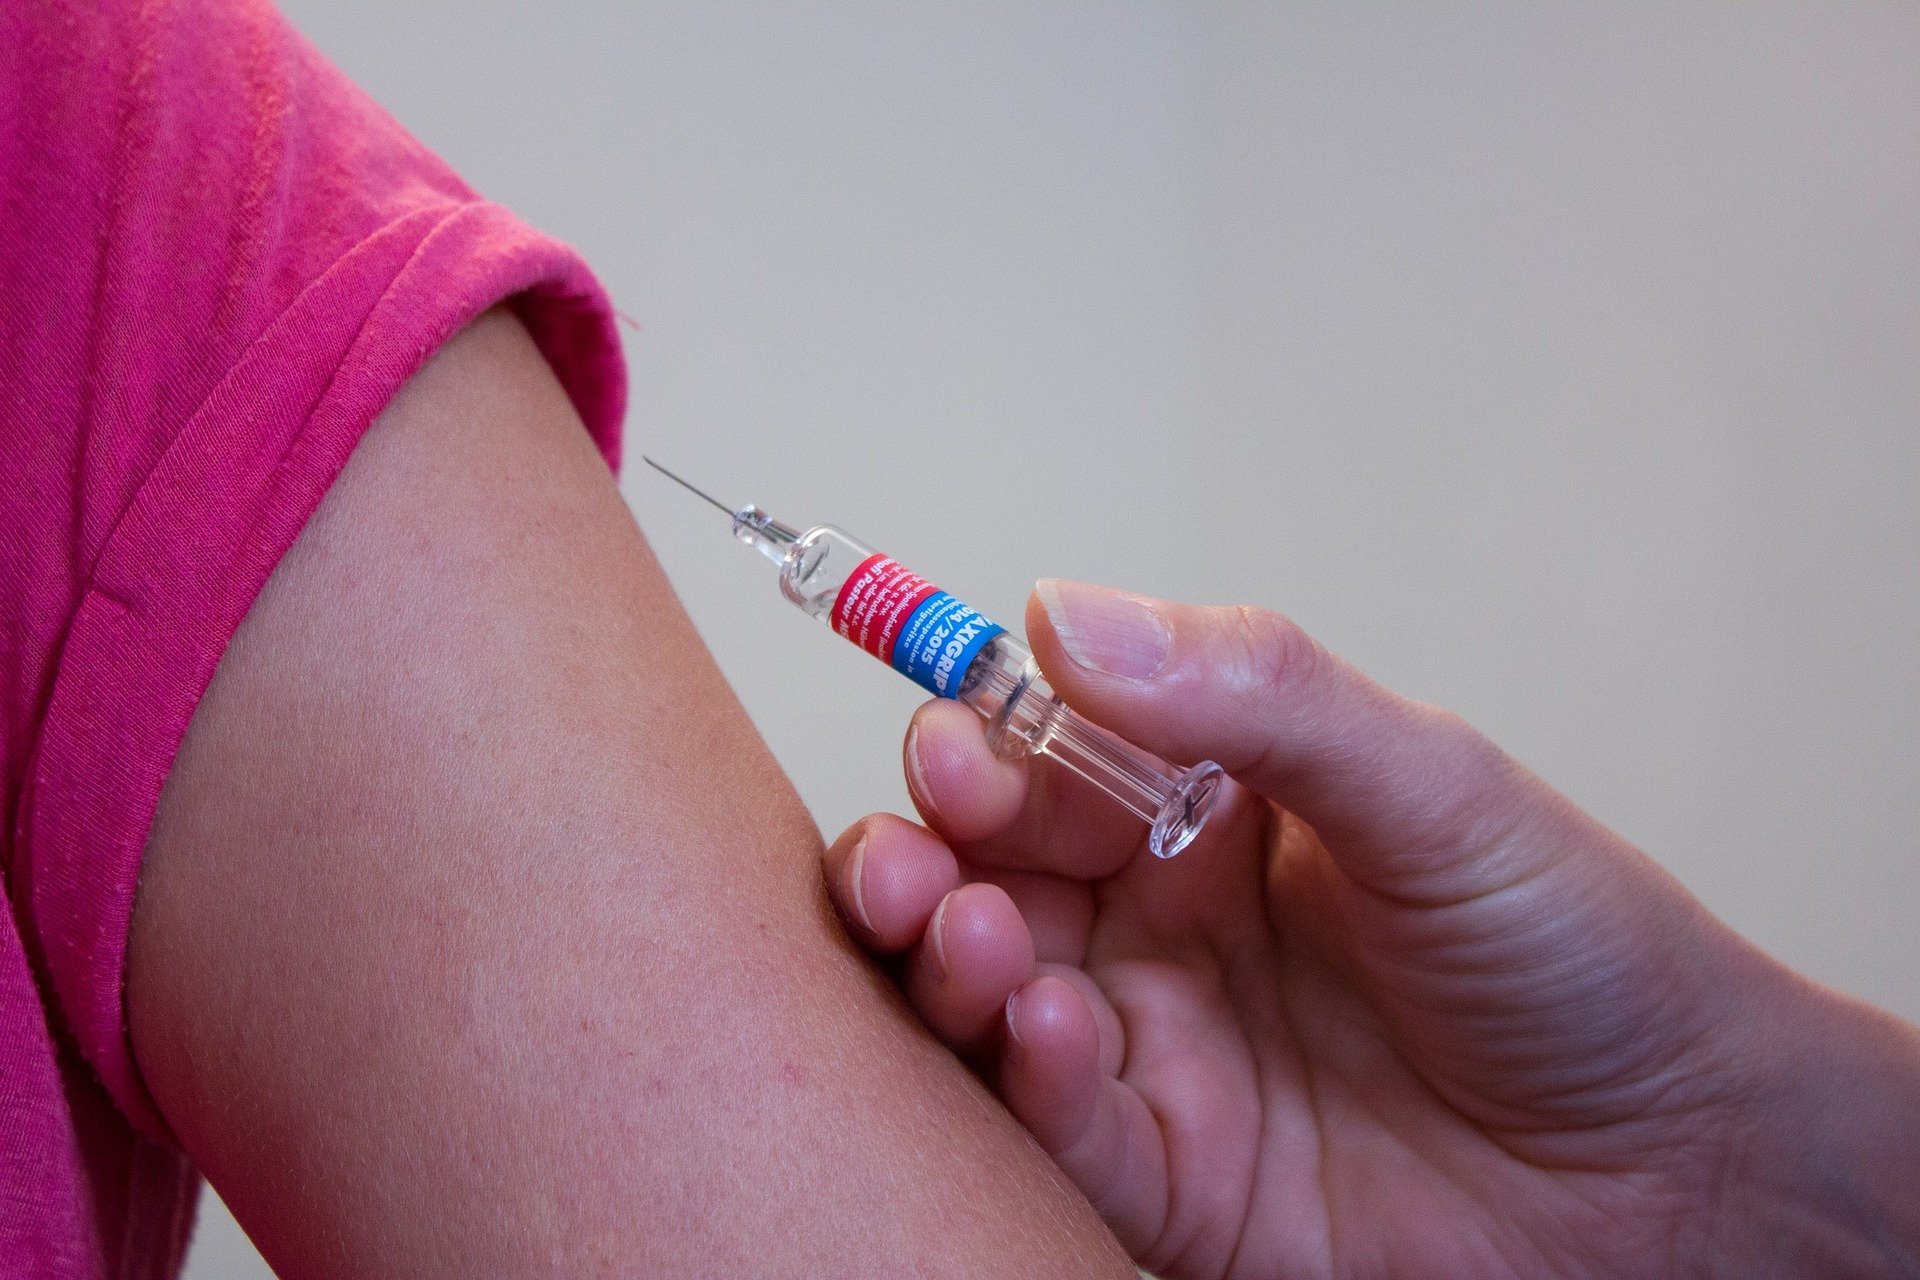 O músculo do braço mantém o imunizante no local correto para acessar os linfonodos.